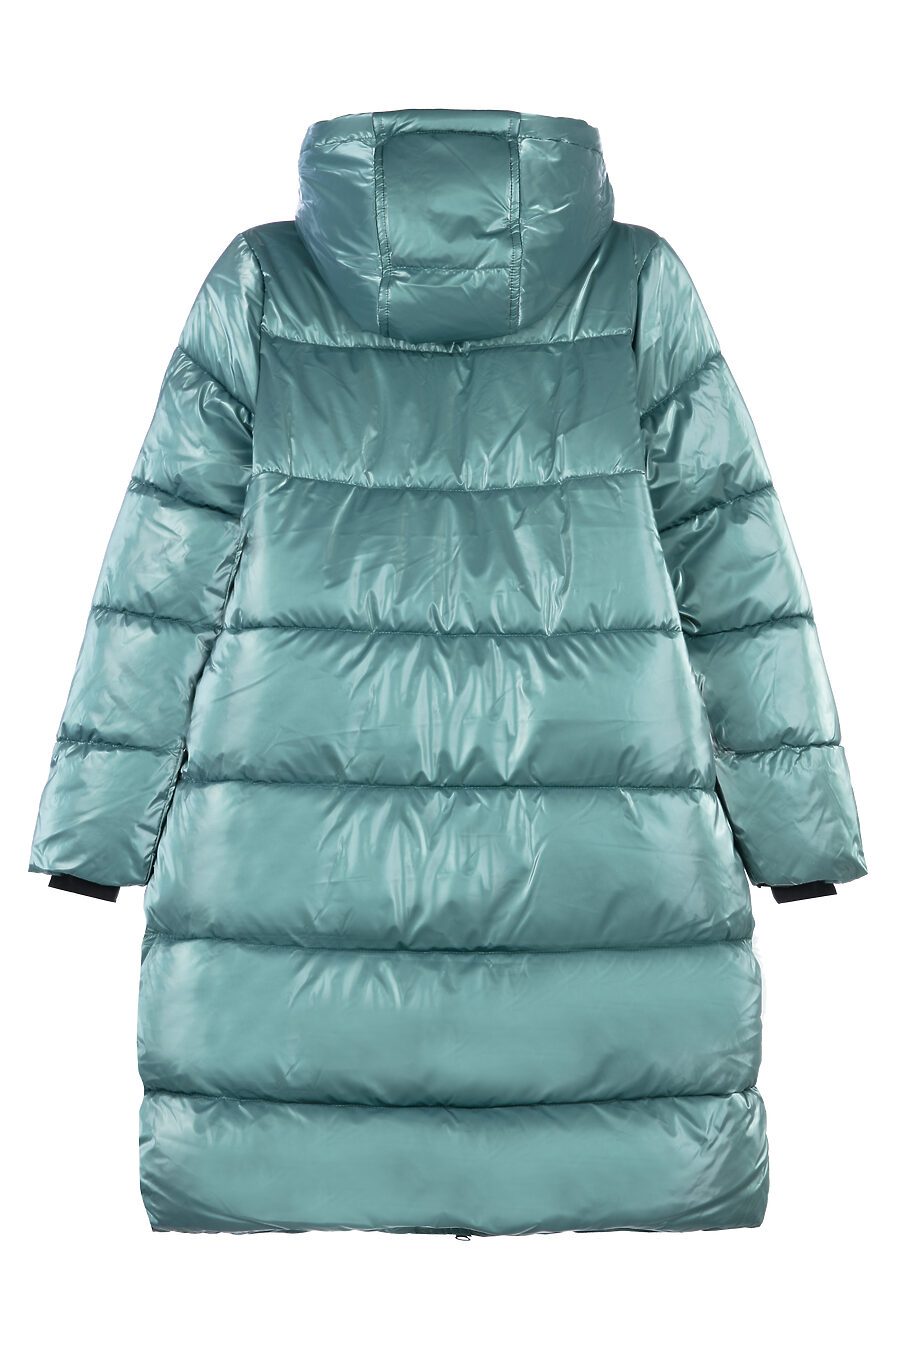 Пальто для девочек PLAYTODAY 795924 купить оптом от производителя. Совместная покупка детской одежды в OptMoyo